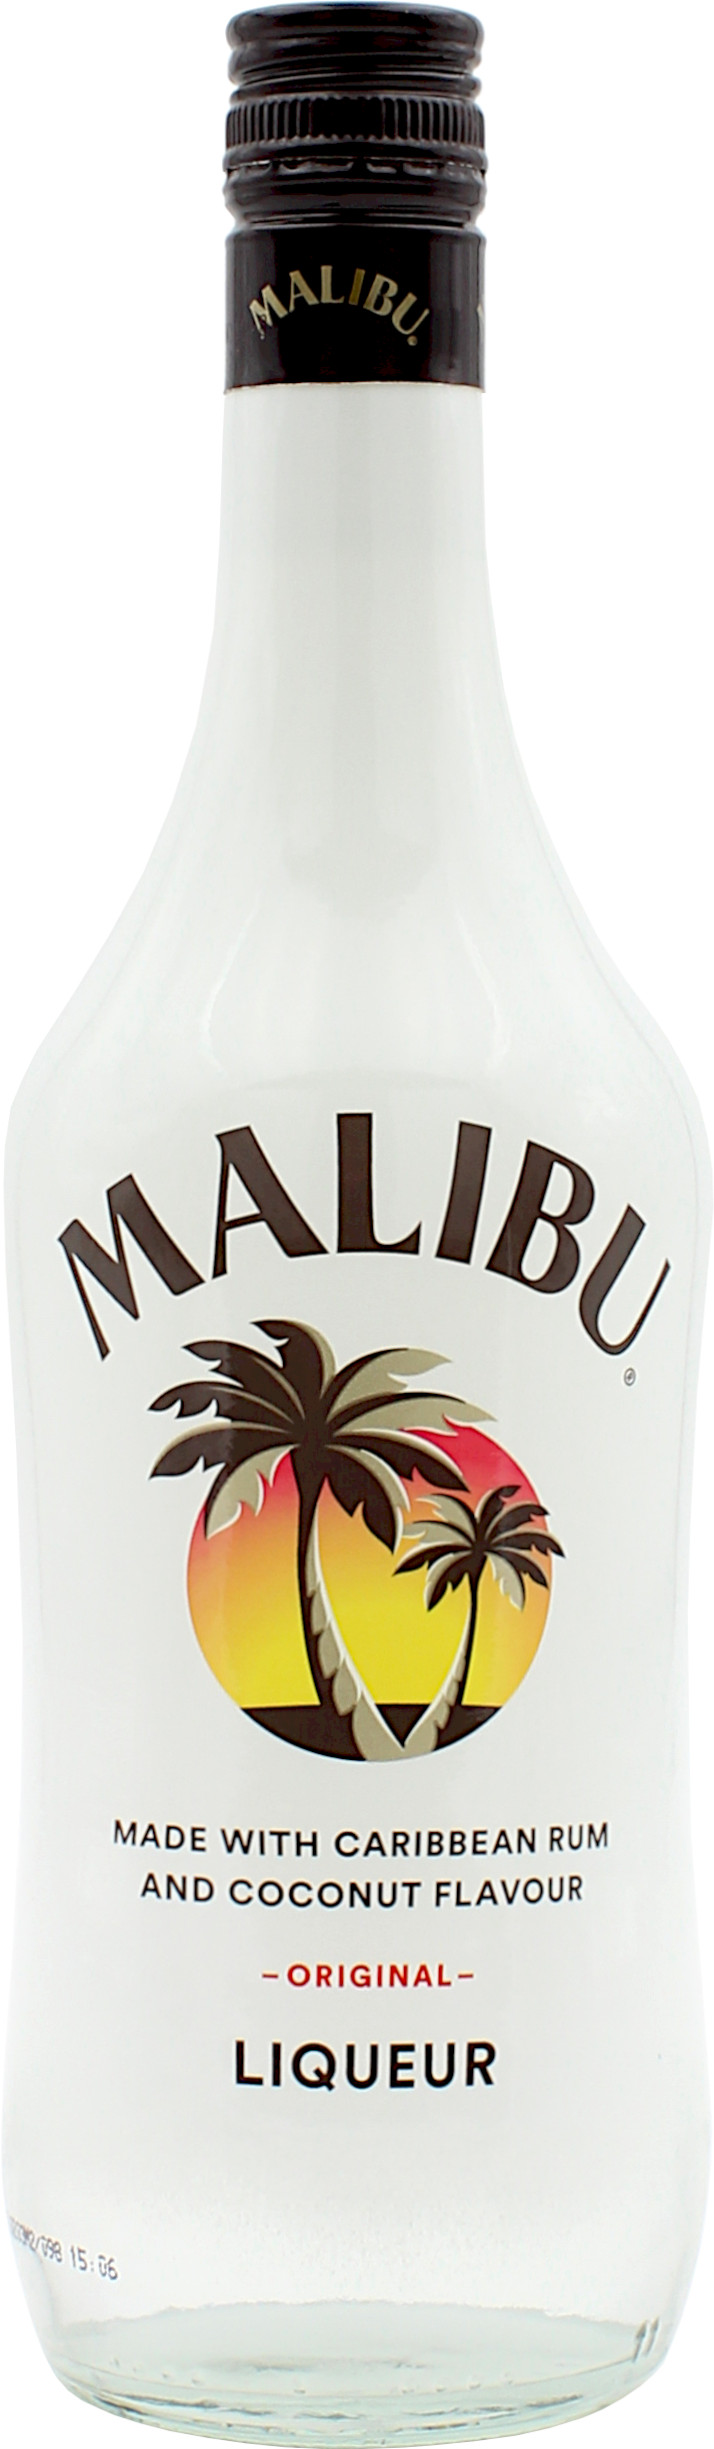 Malibu 21.0% 0,7l